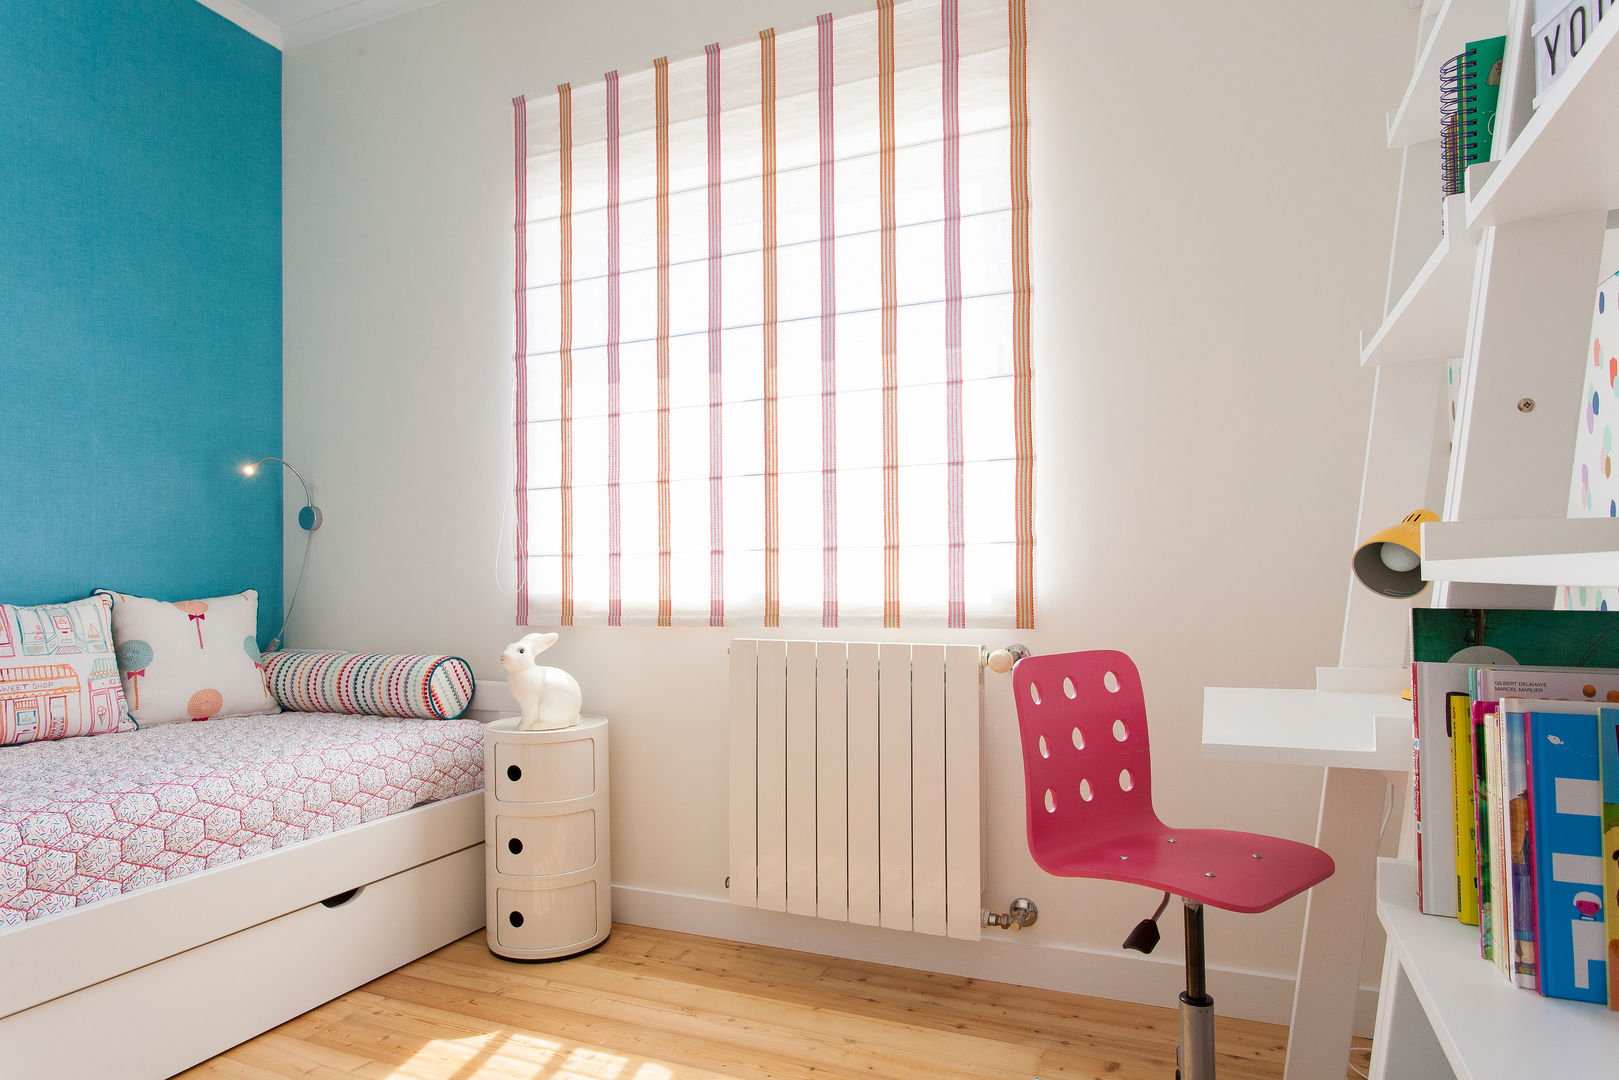 Moradia c/ 2 quartos - Cascais, Traço Magenta - Design de Interiores Traço Magenta - Design de Interiores Dormitorios infantiles de estilo moderno